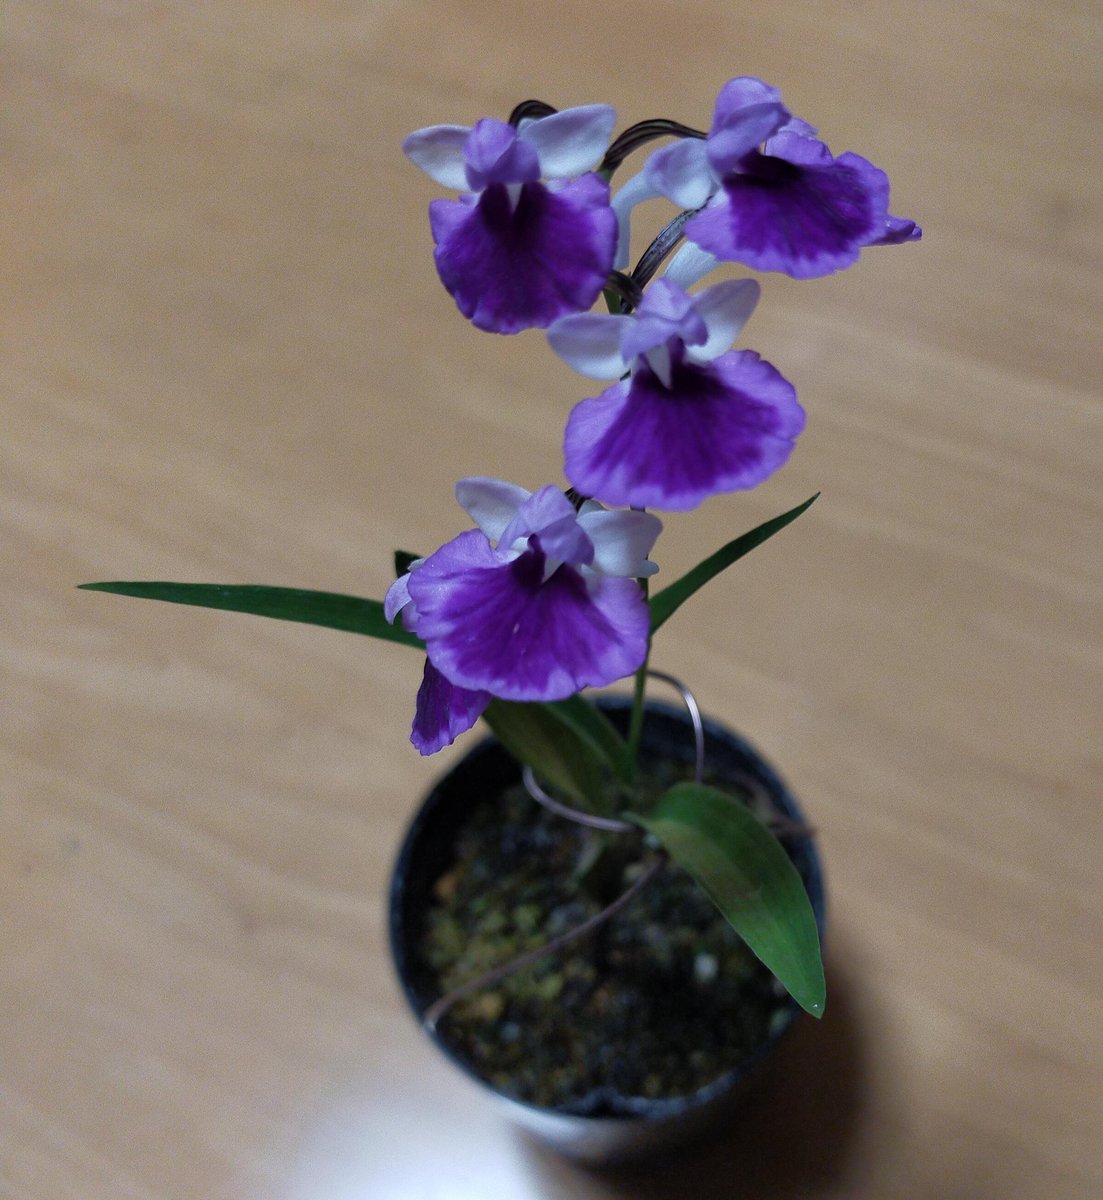 道の駅で買ったカワイコちゃん

山野草以外に名前が書かれてなくて、これはGoogleCameraですか？と検索したけどエビネを出してくる

葉が違いますき、もっとこぅ細うて花が繊細ながです　
（エセ万太郎）

と自力で調べて
羽蝶蘭とわかりました